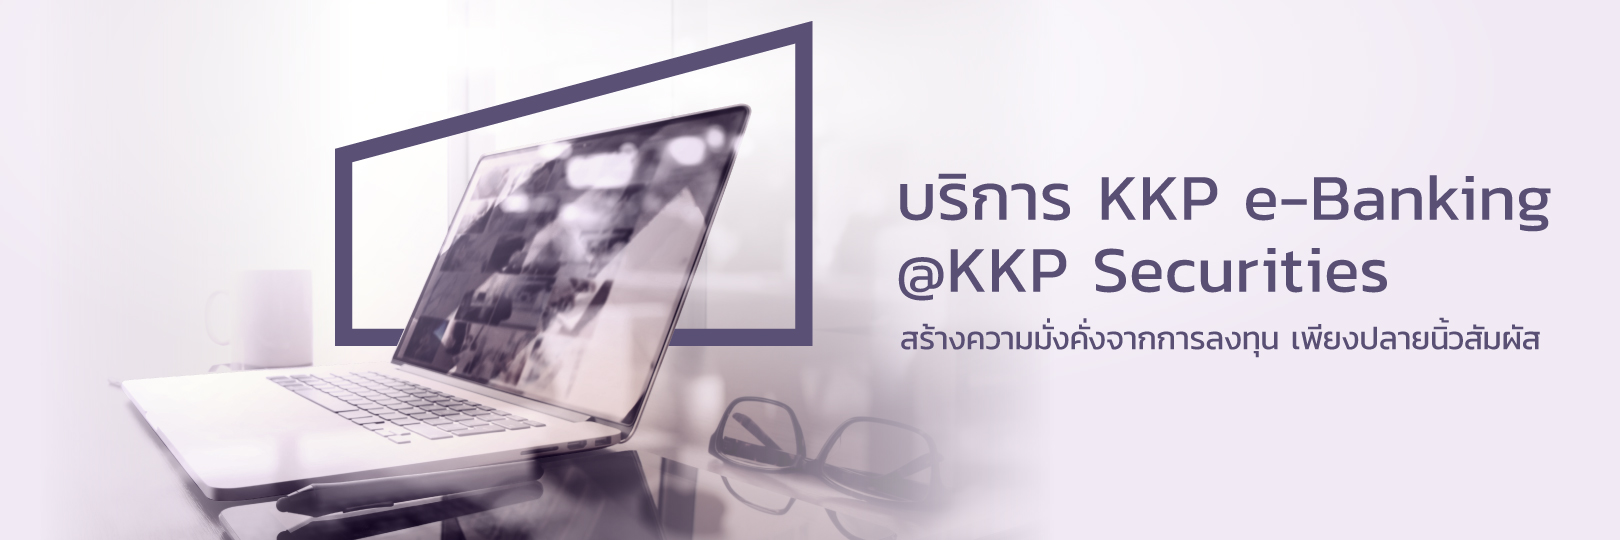 KKP-e-Banking-KKP-Securities_1620x540